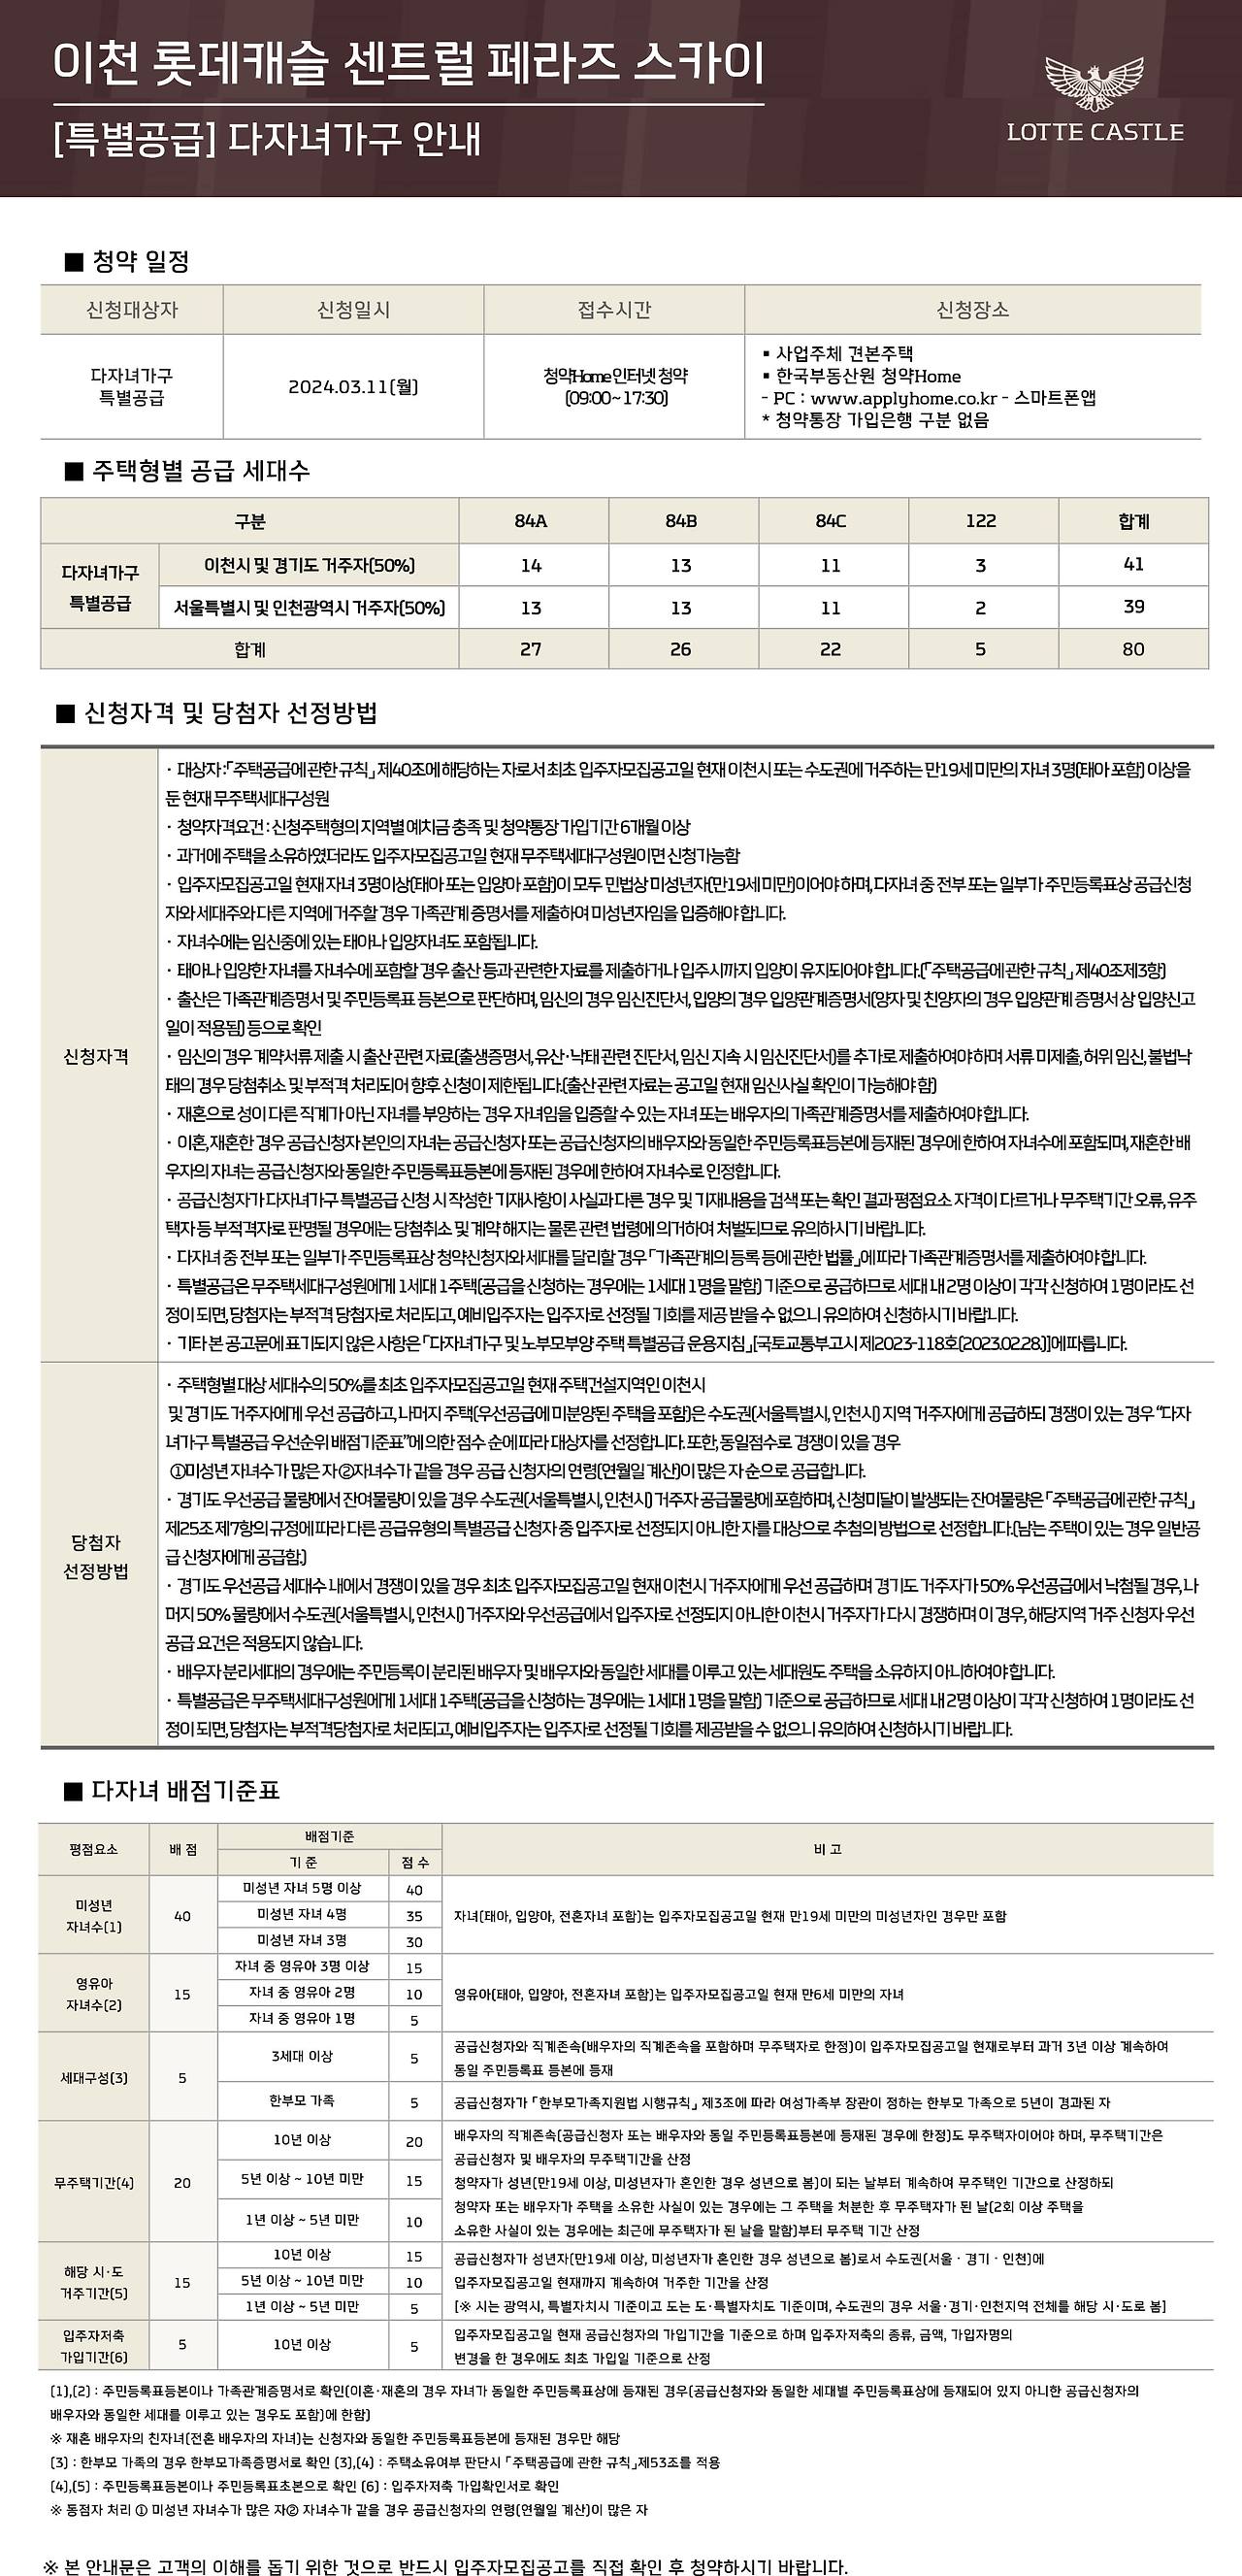 이천 롯데캐슬 센트럴 페라즈 스카이 아파트-청약안내문-특별공급-다자녀